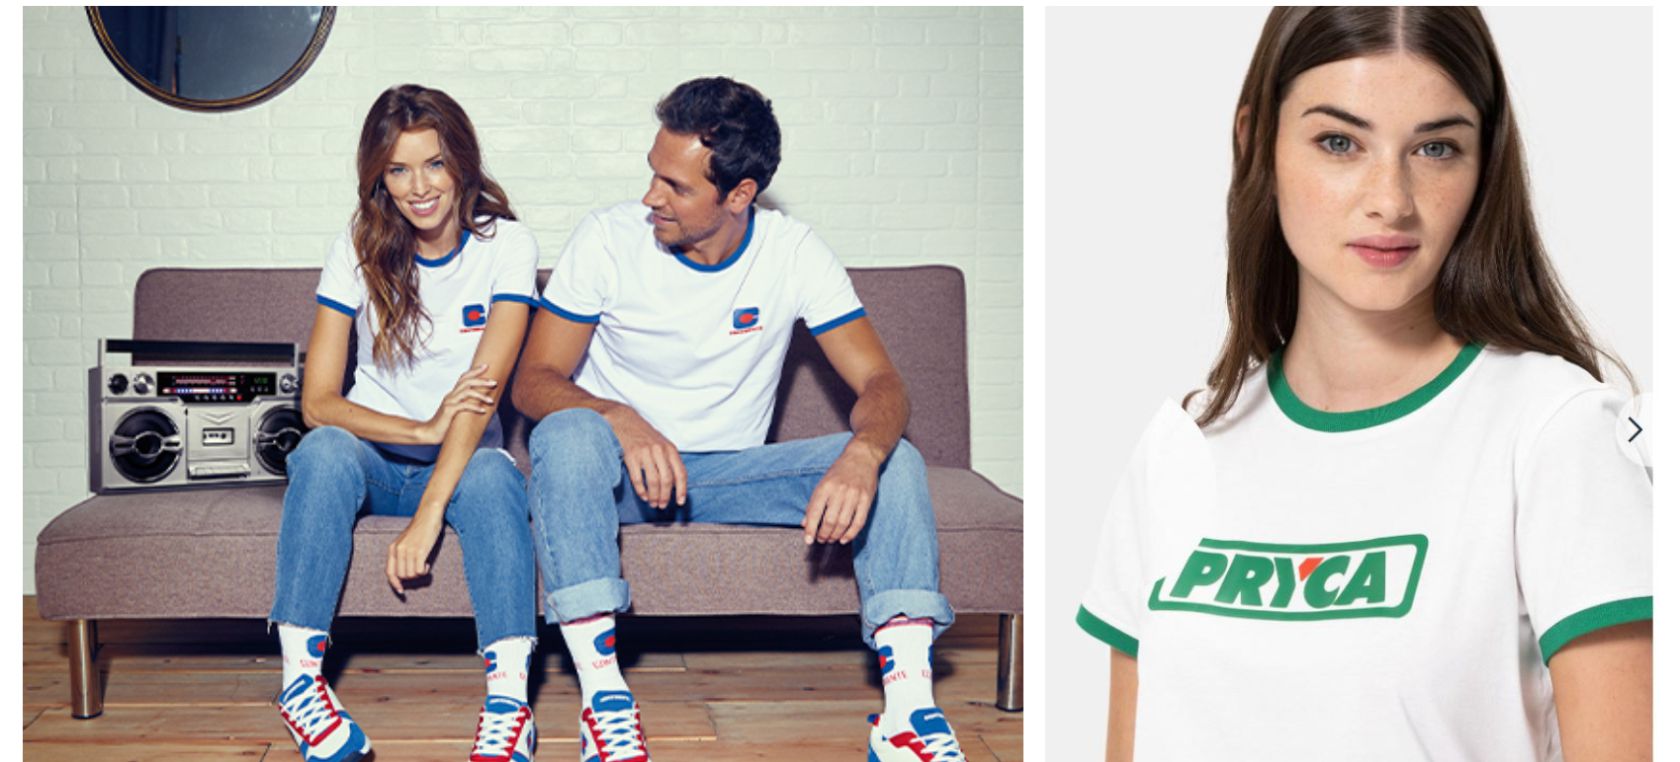 Carrefour venderá en sus supermercados las camisetas que todos los nostalgicos van a querer